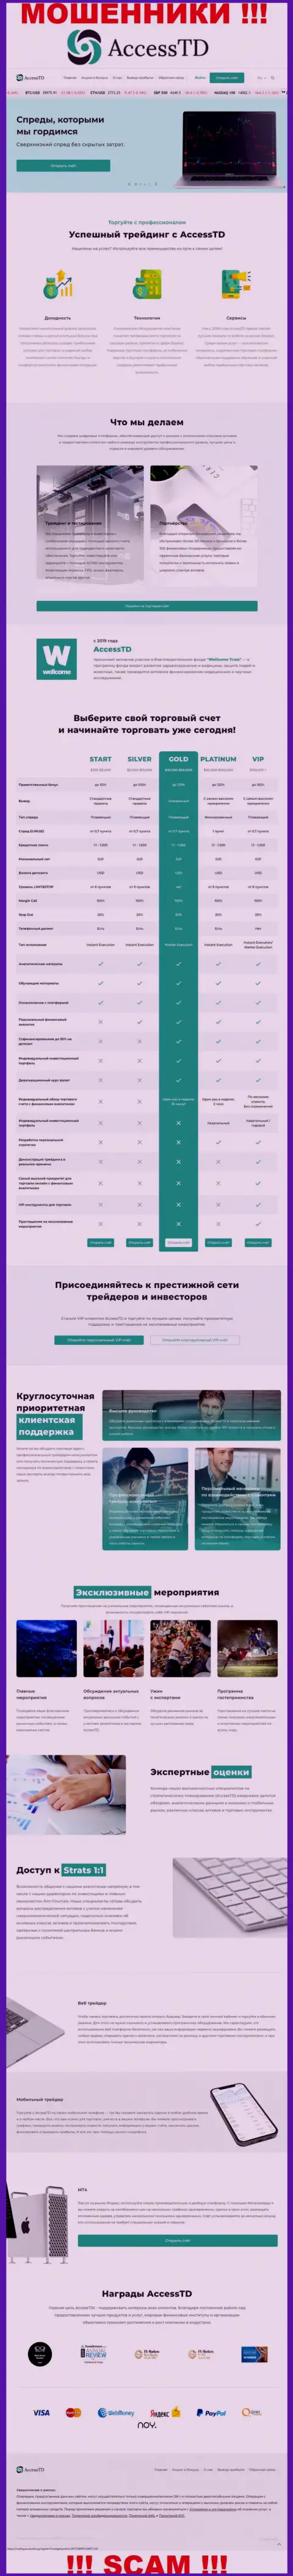 Неправда на страничках информационного портала мошенников Ассесс ТД